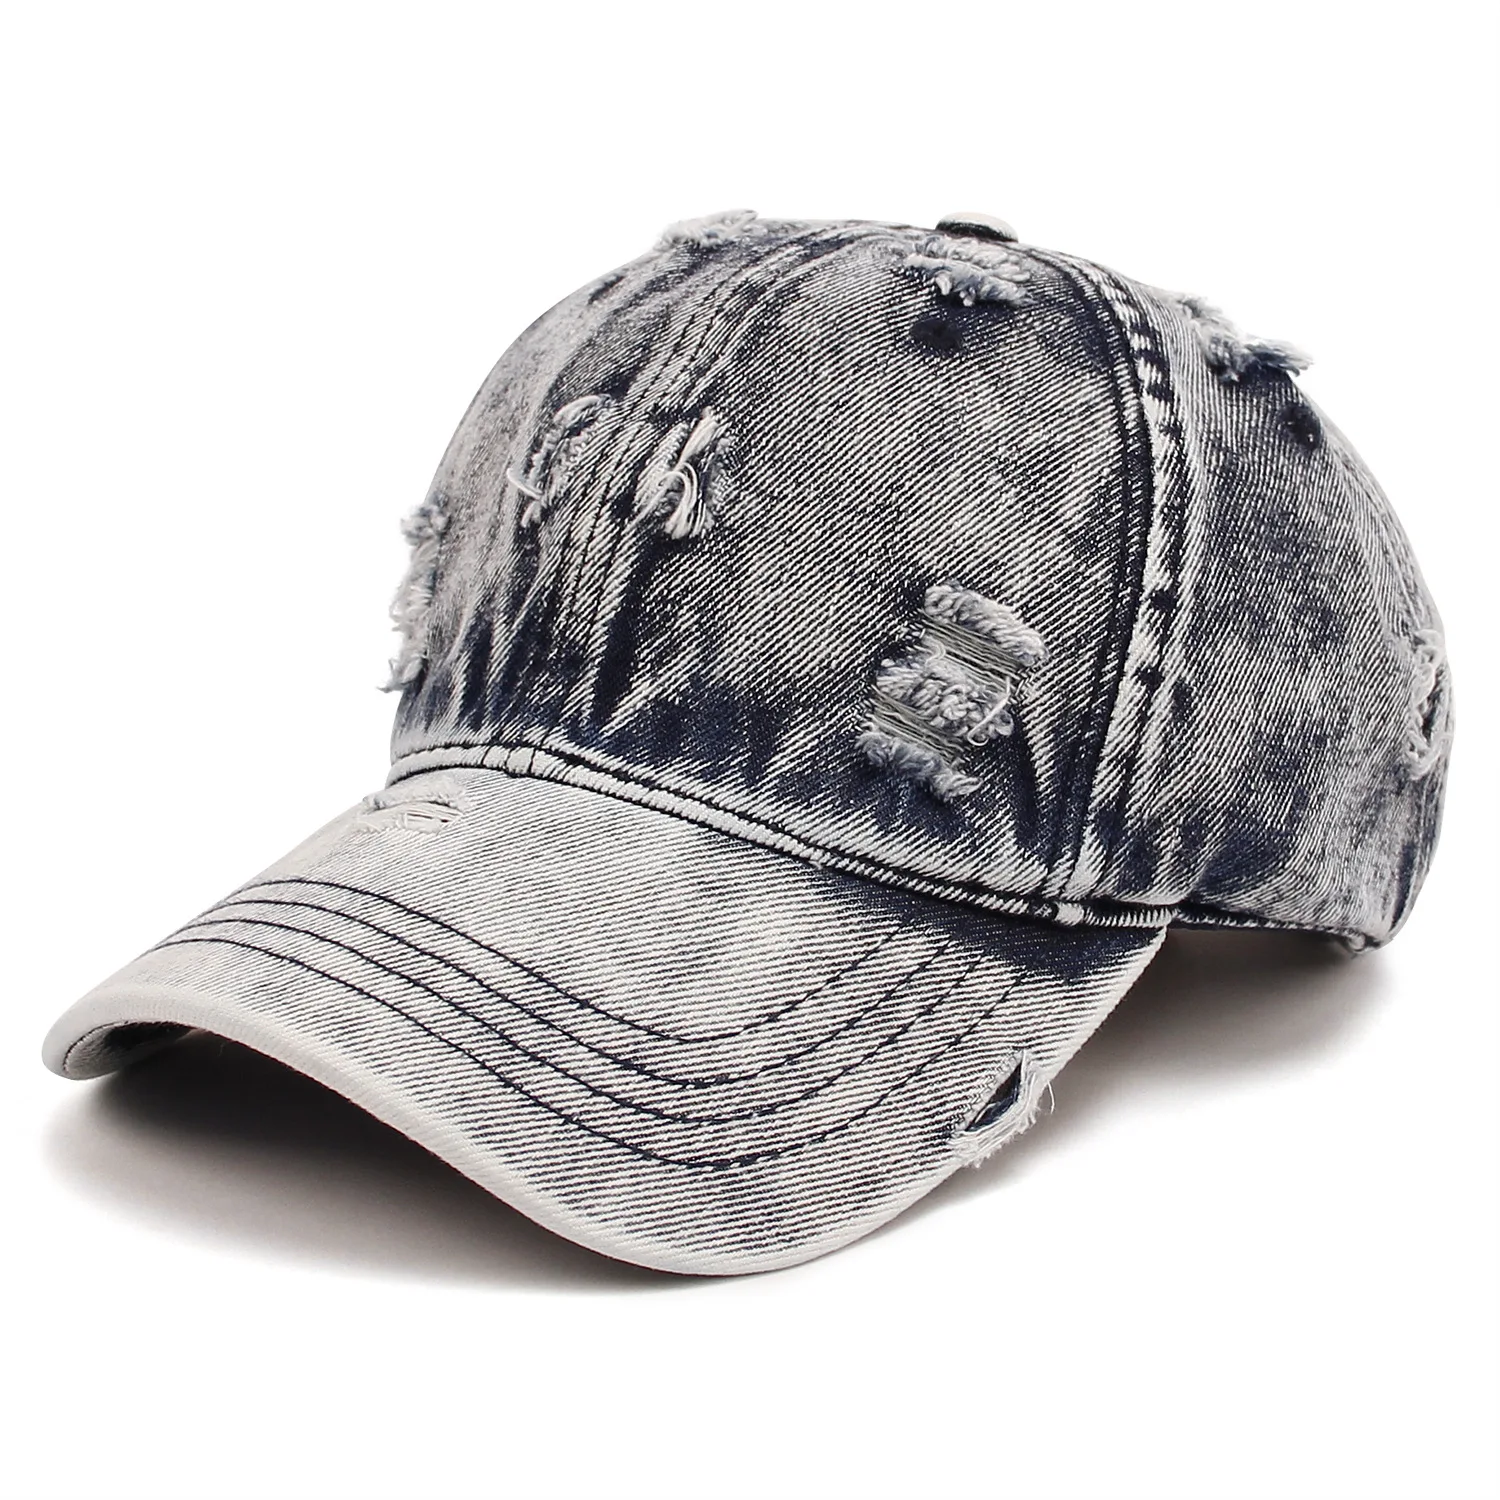 Haebfsl Vintage Canada Maple Leaf 100% Cotton Washed Denim Baseball Cap -  Adjustable Vintage Dad Hat for Men and Women at  Men's Clothing store